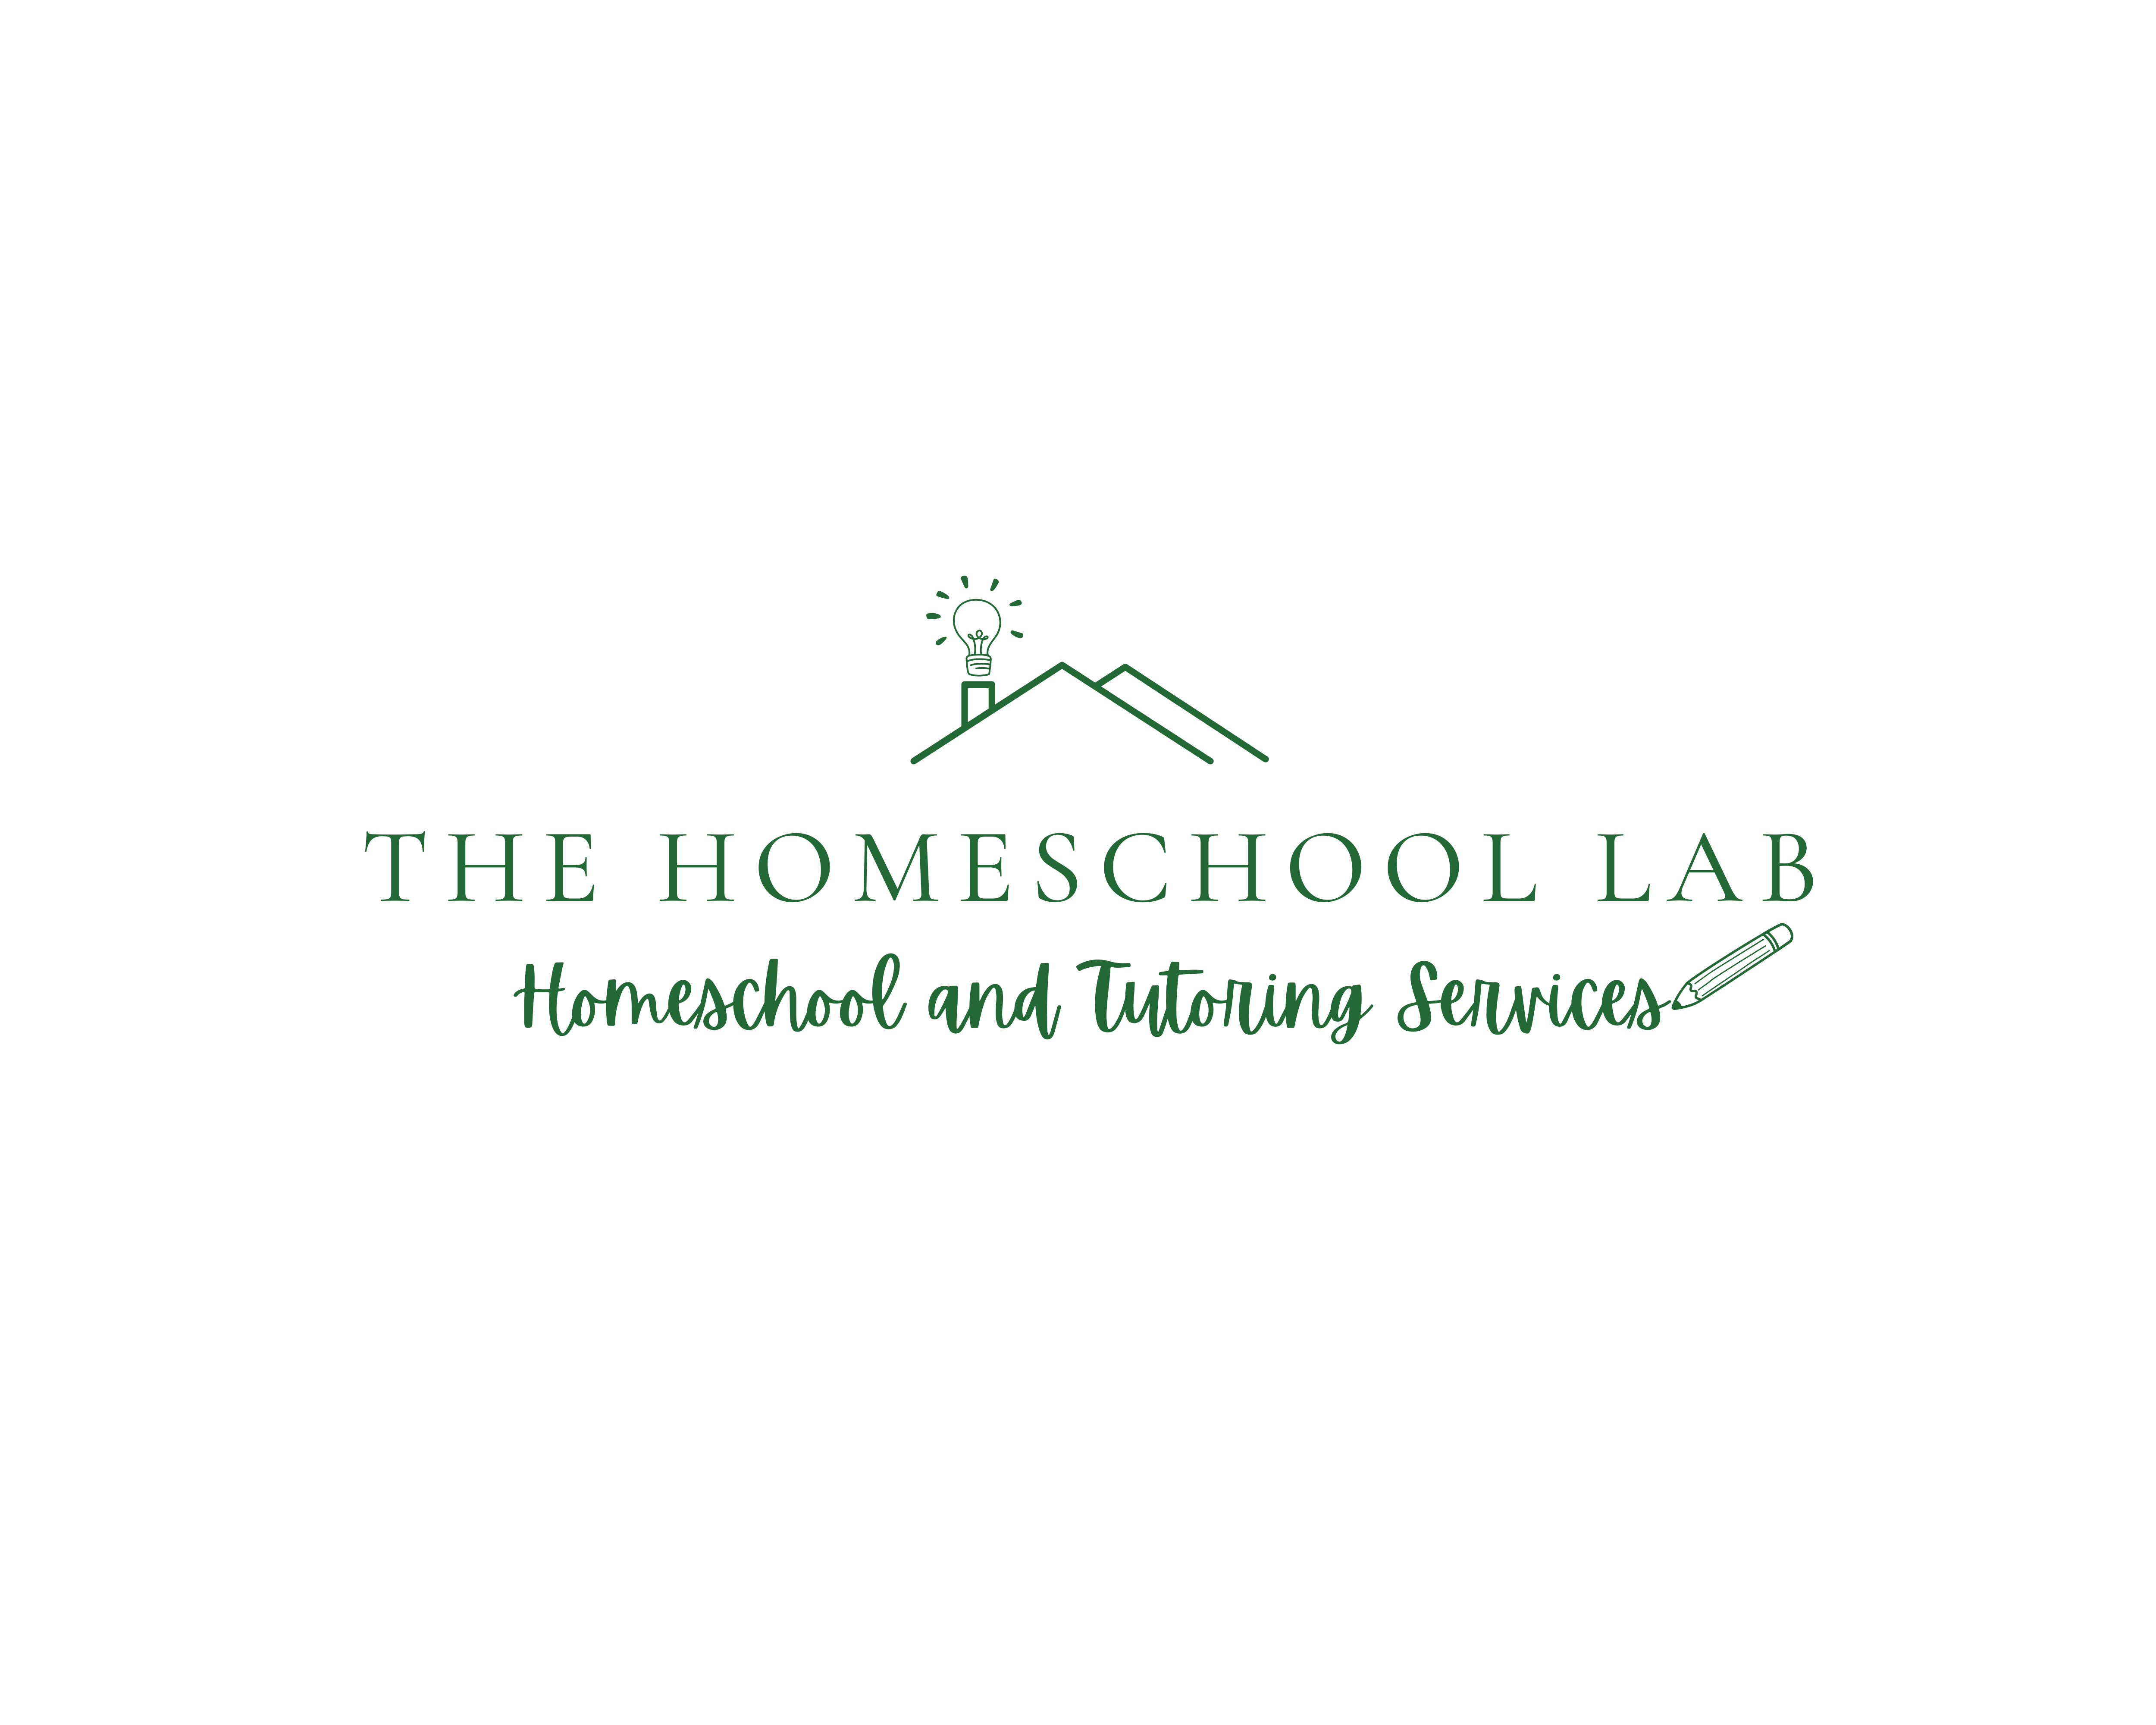 The Homeschool Lab Inc